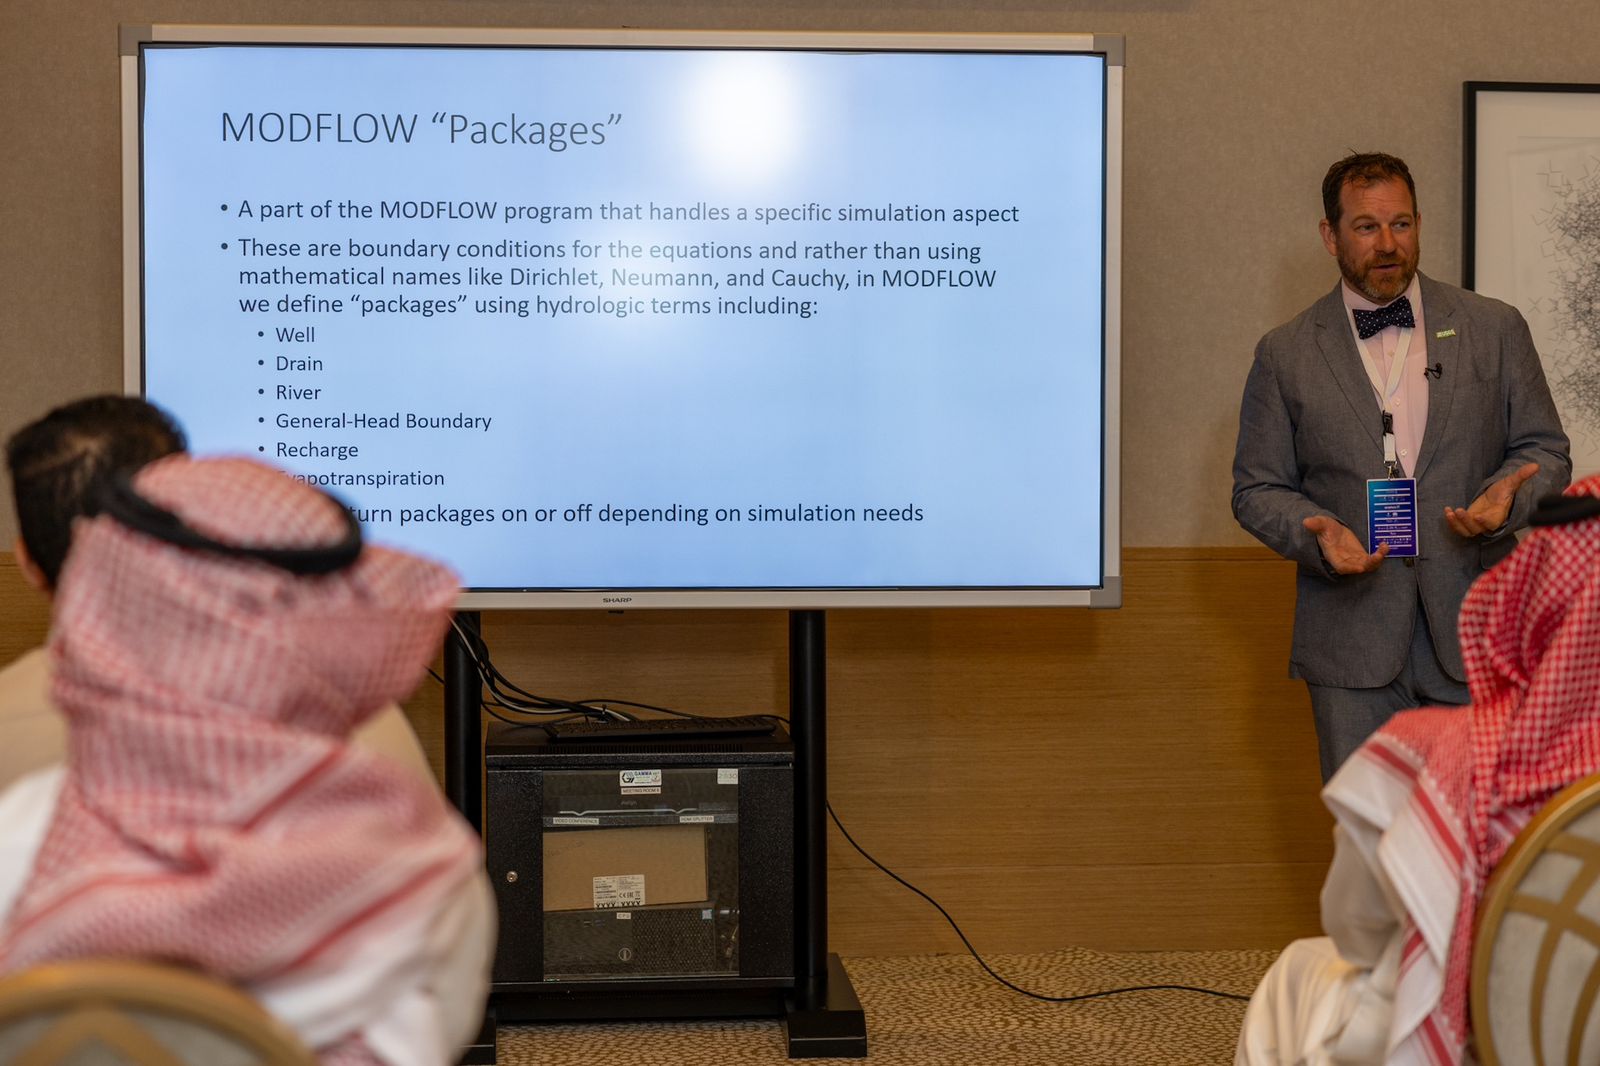 خبراء دوليون يثرون منتدى المياه السعودي الثالث بـ (10) ورش عمل متخصصة في انطلاقته